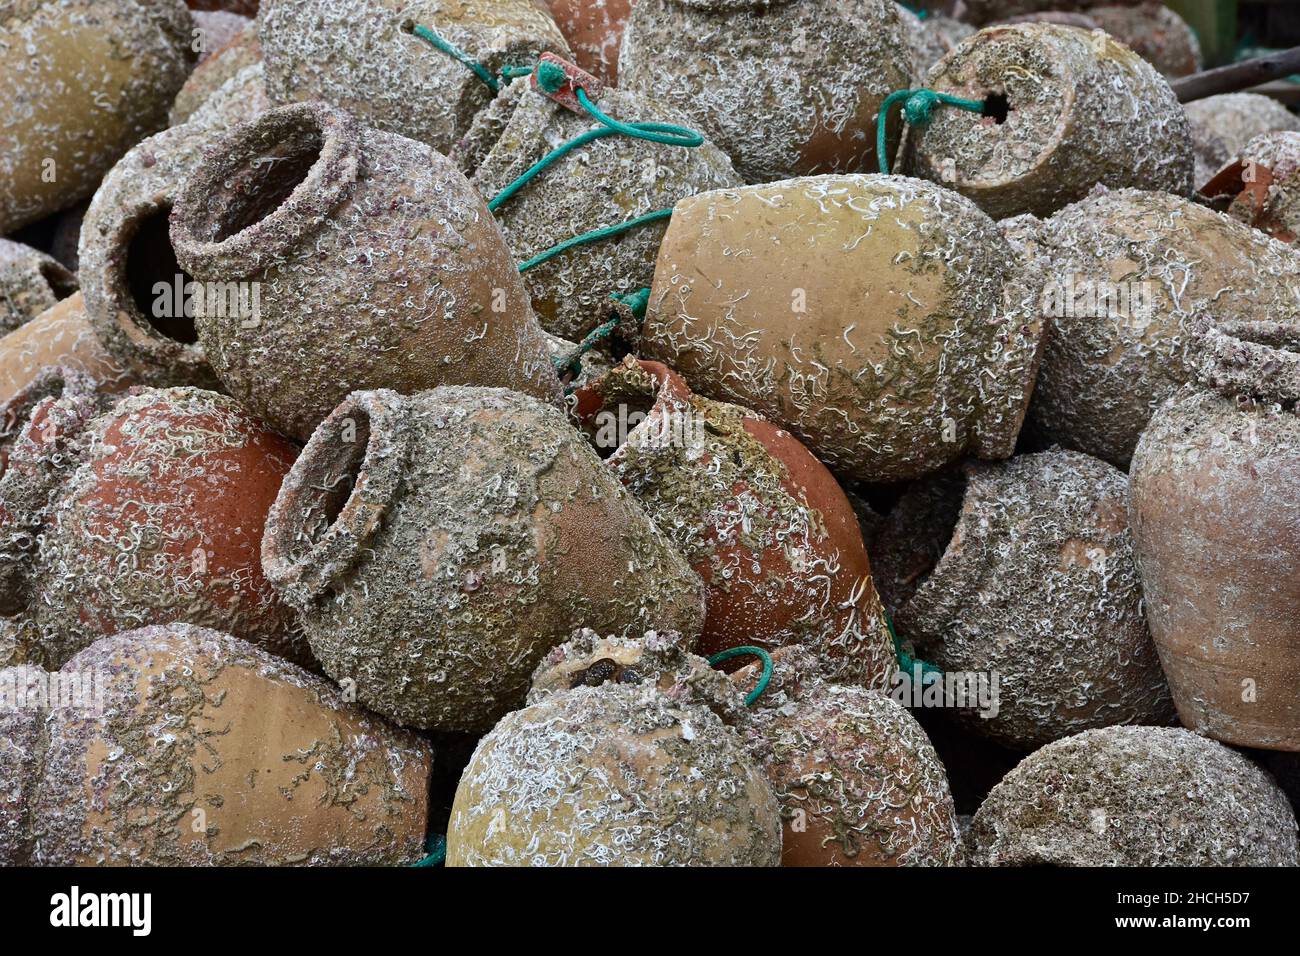 Vasi di argilla riempiti di alghe marine per la pesca dell'aragosta Foto Stock